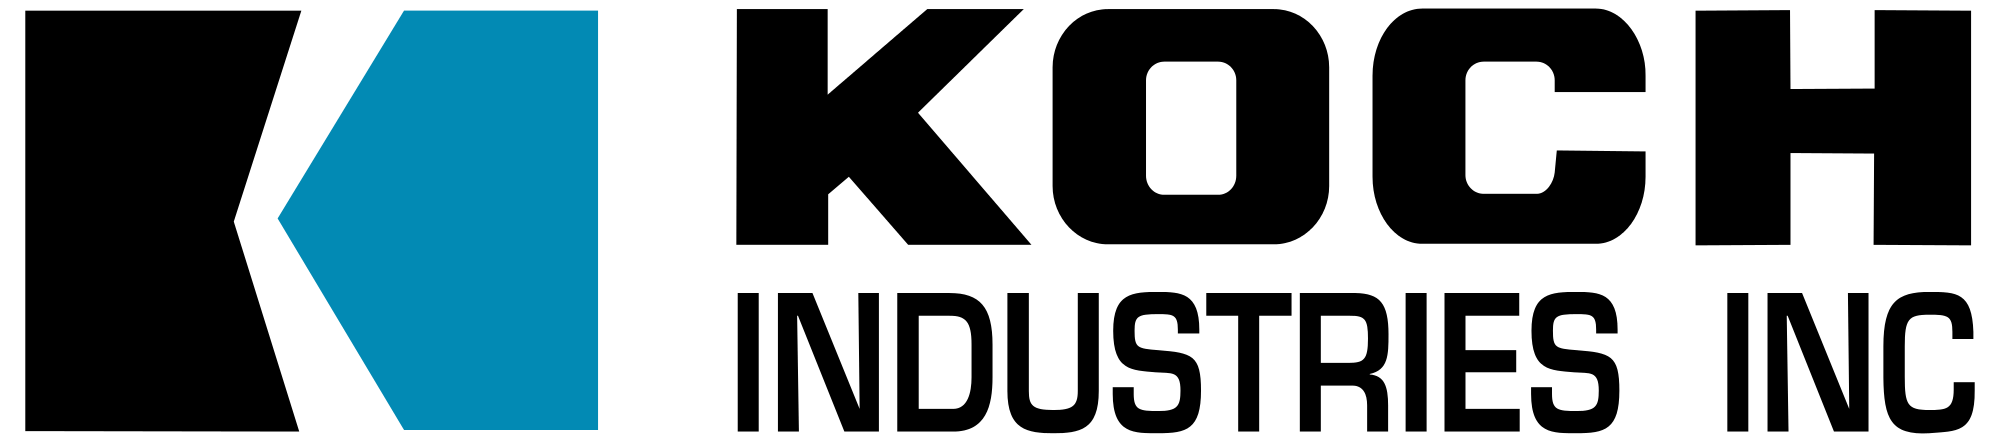 Koch Logo - Logo Koch Industries.svg